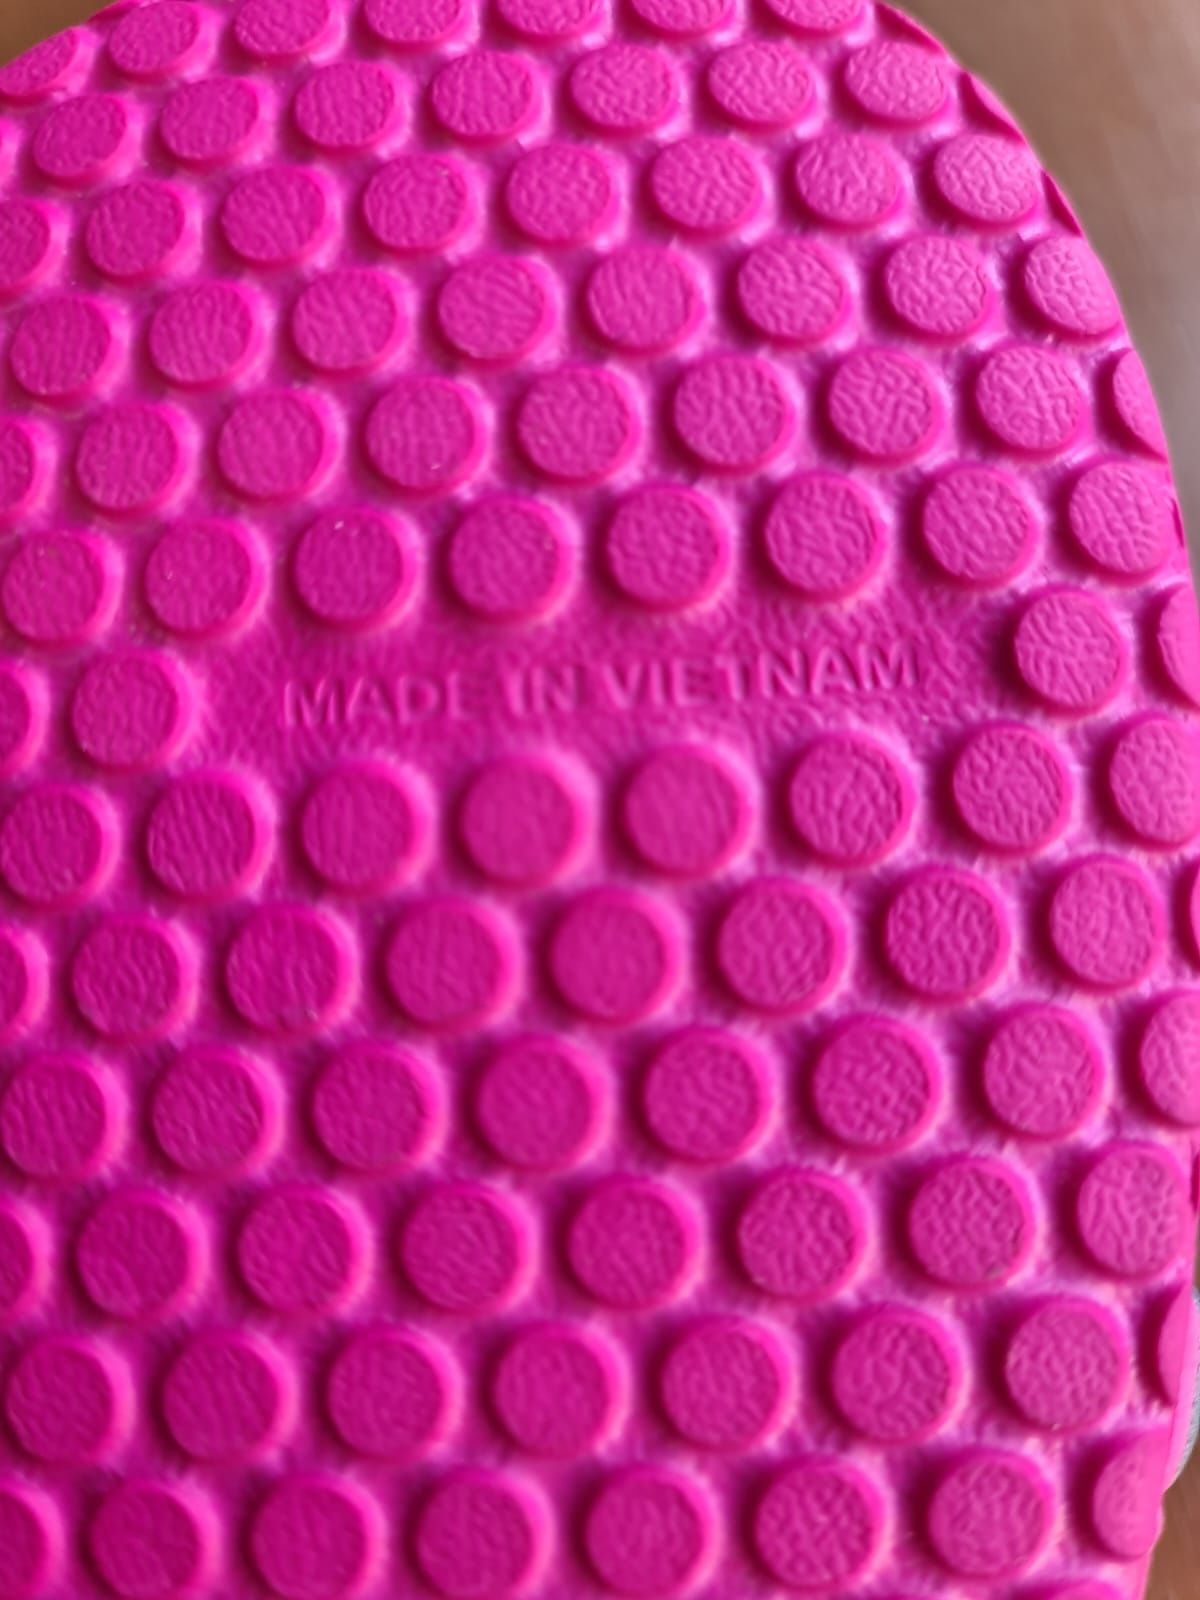 НОВЫЕ массажные женские шлёпки сланцы Adidas из фирменного бутика